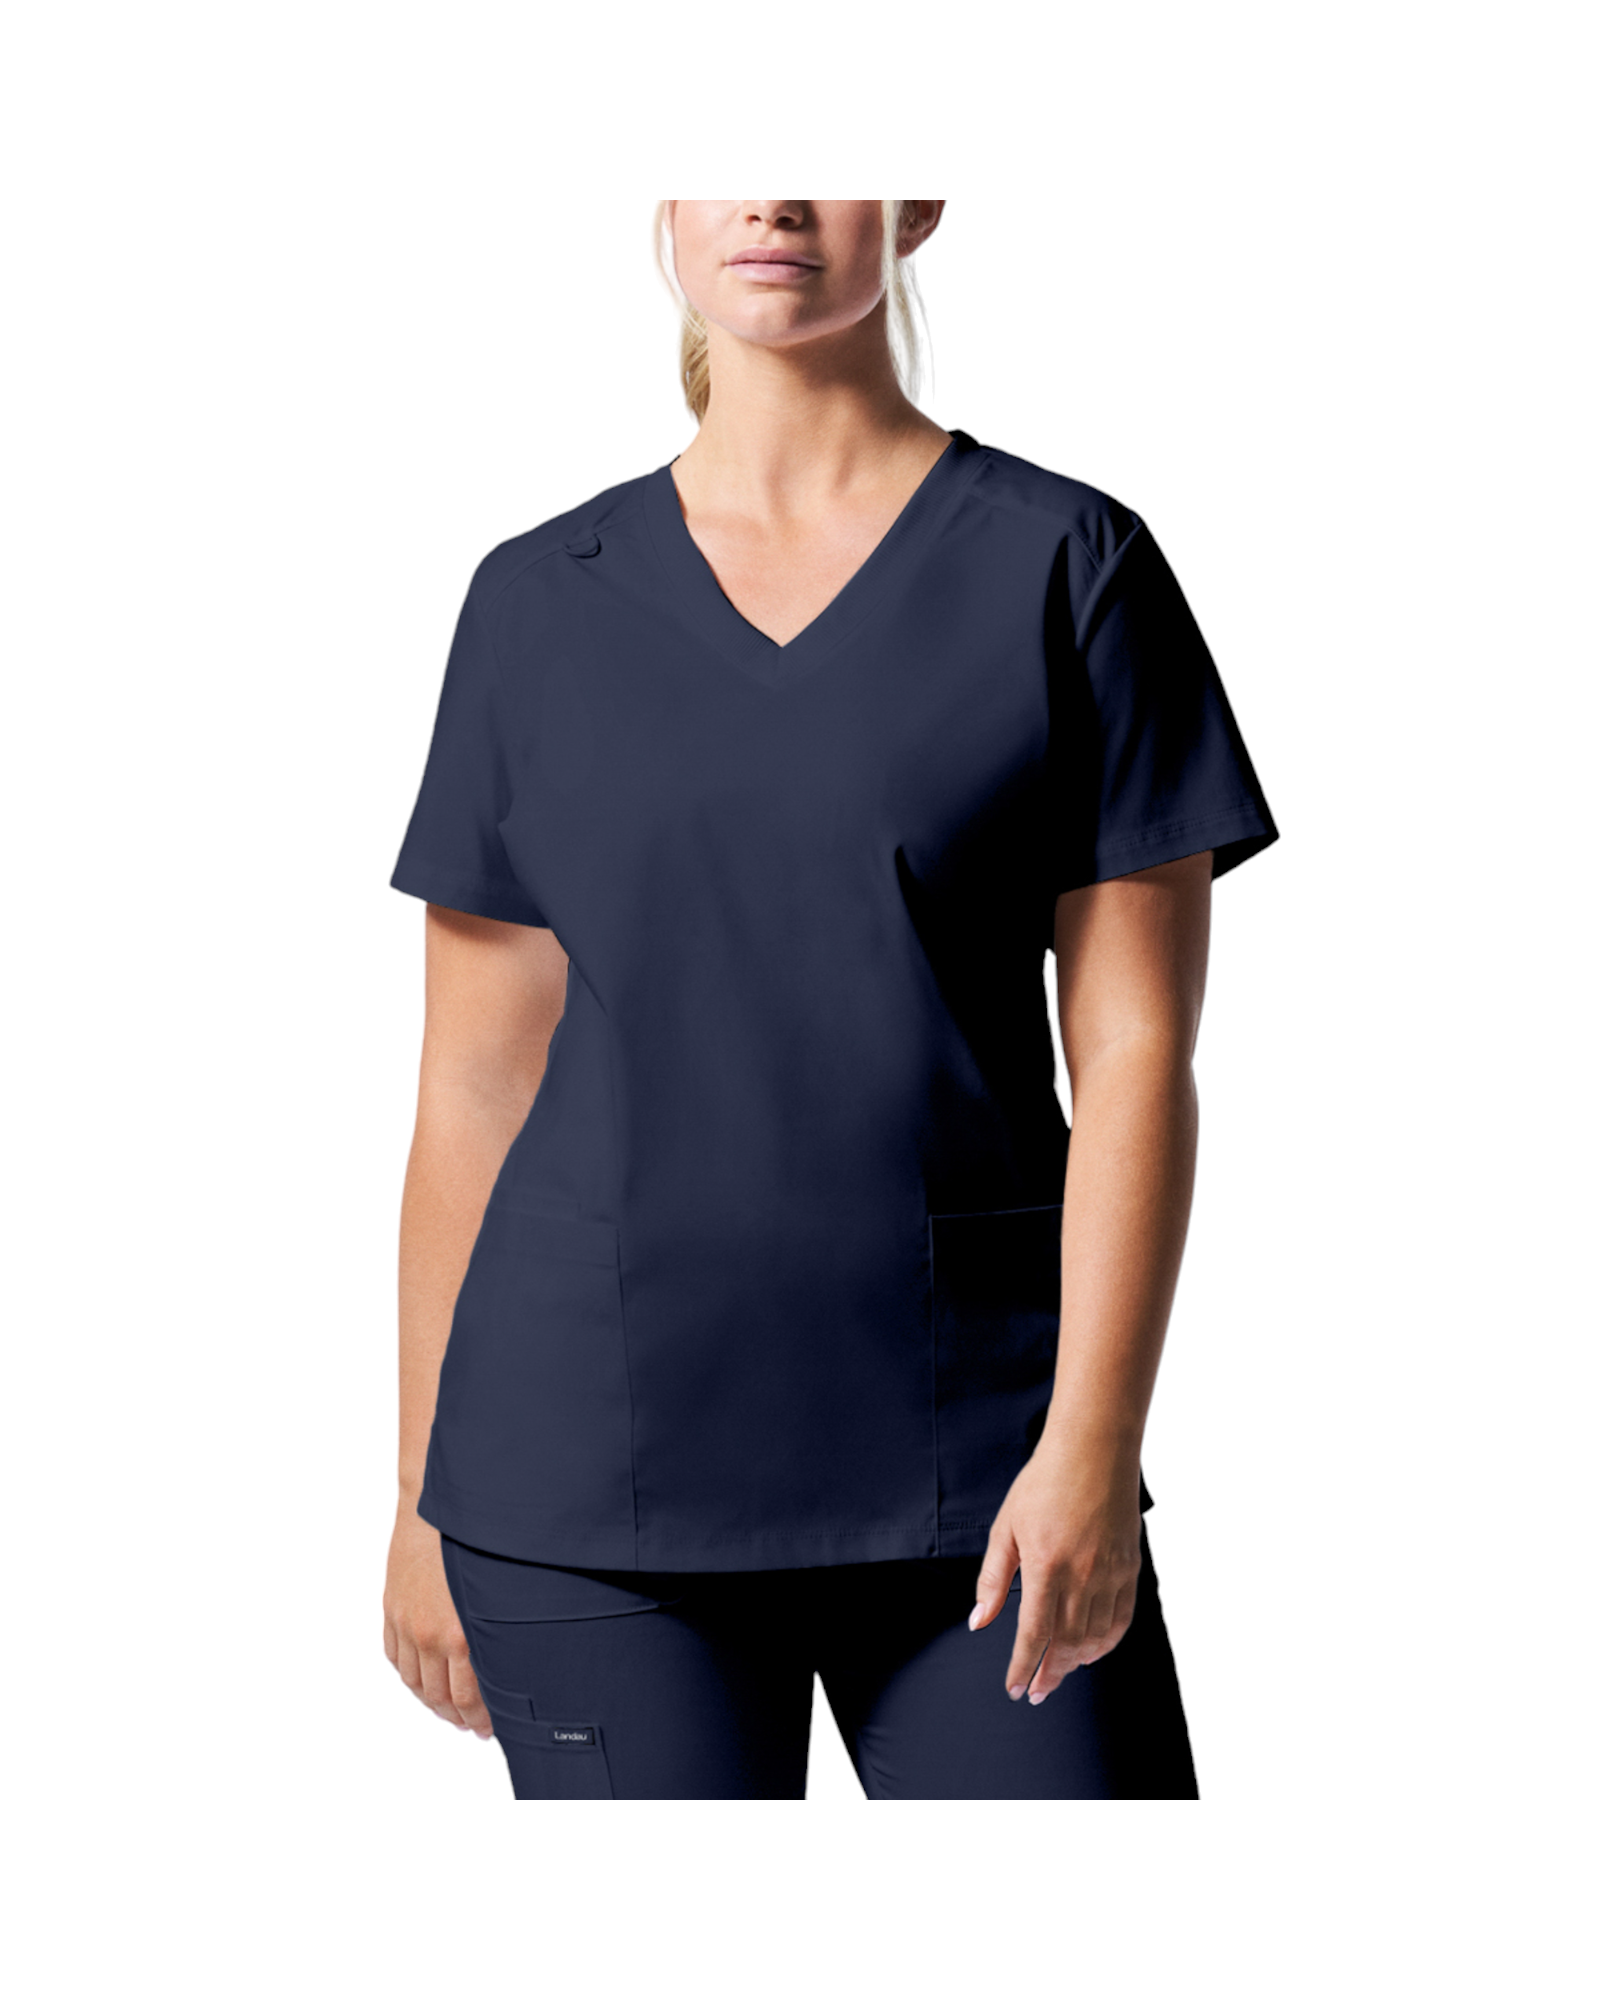 Uniforme de marque landau pour femmes taille plus. Travailleuses du domaine de la santé. LT105-OS couleur True blue, col en V.